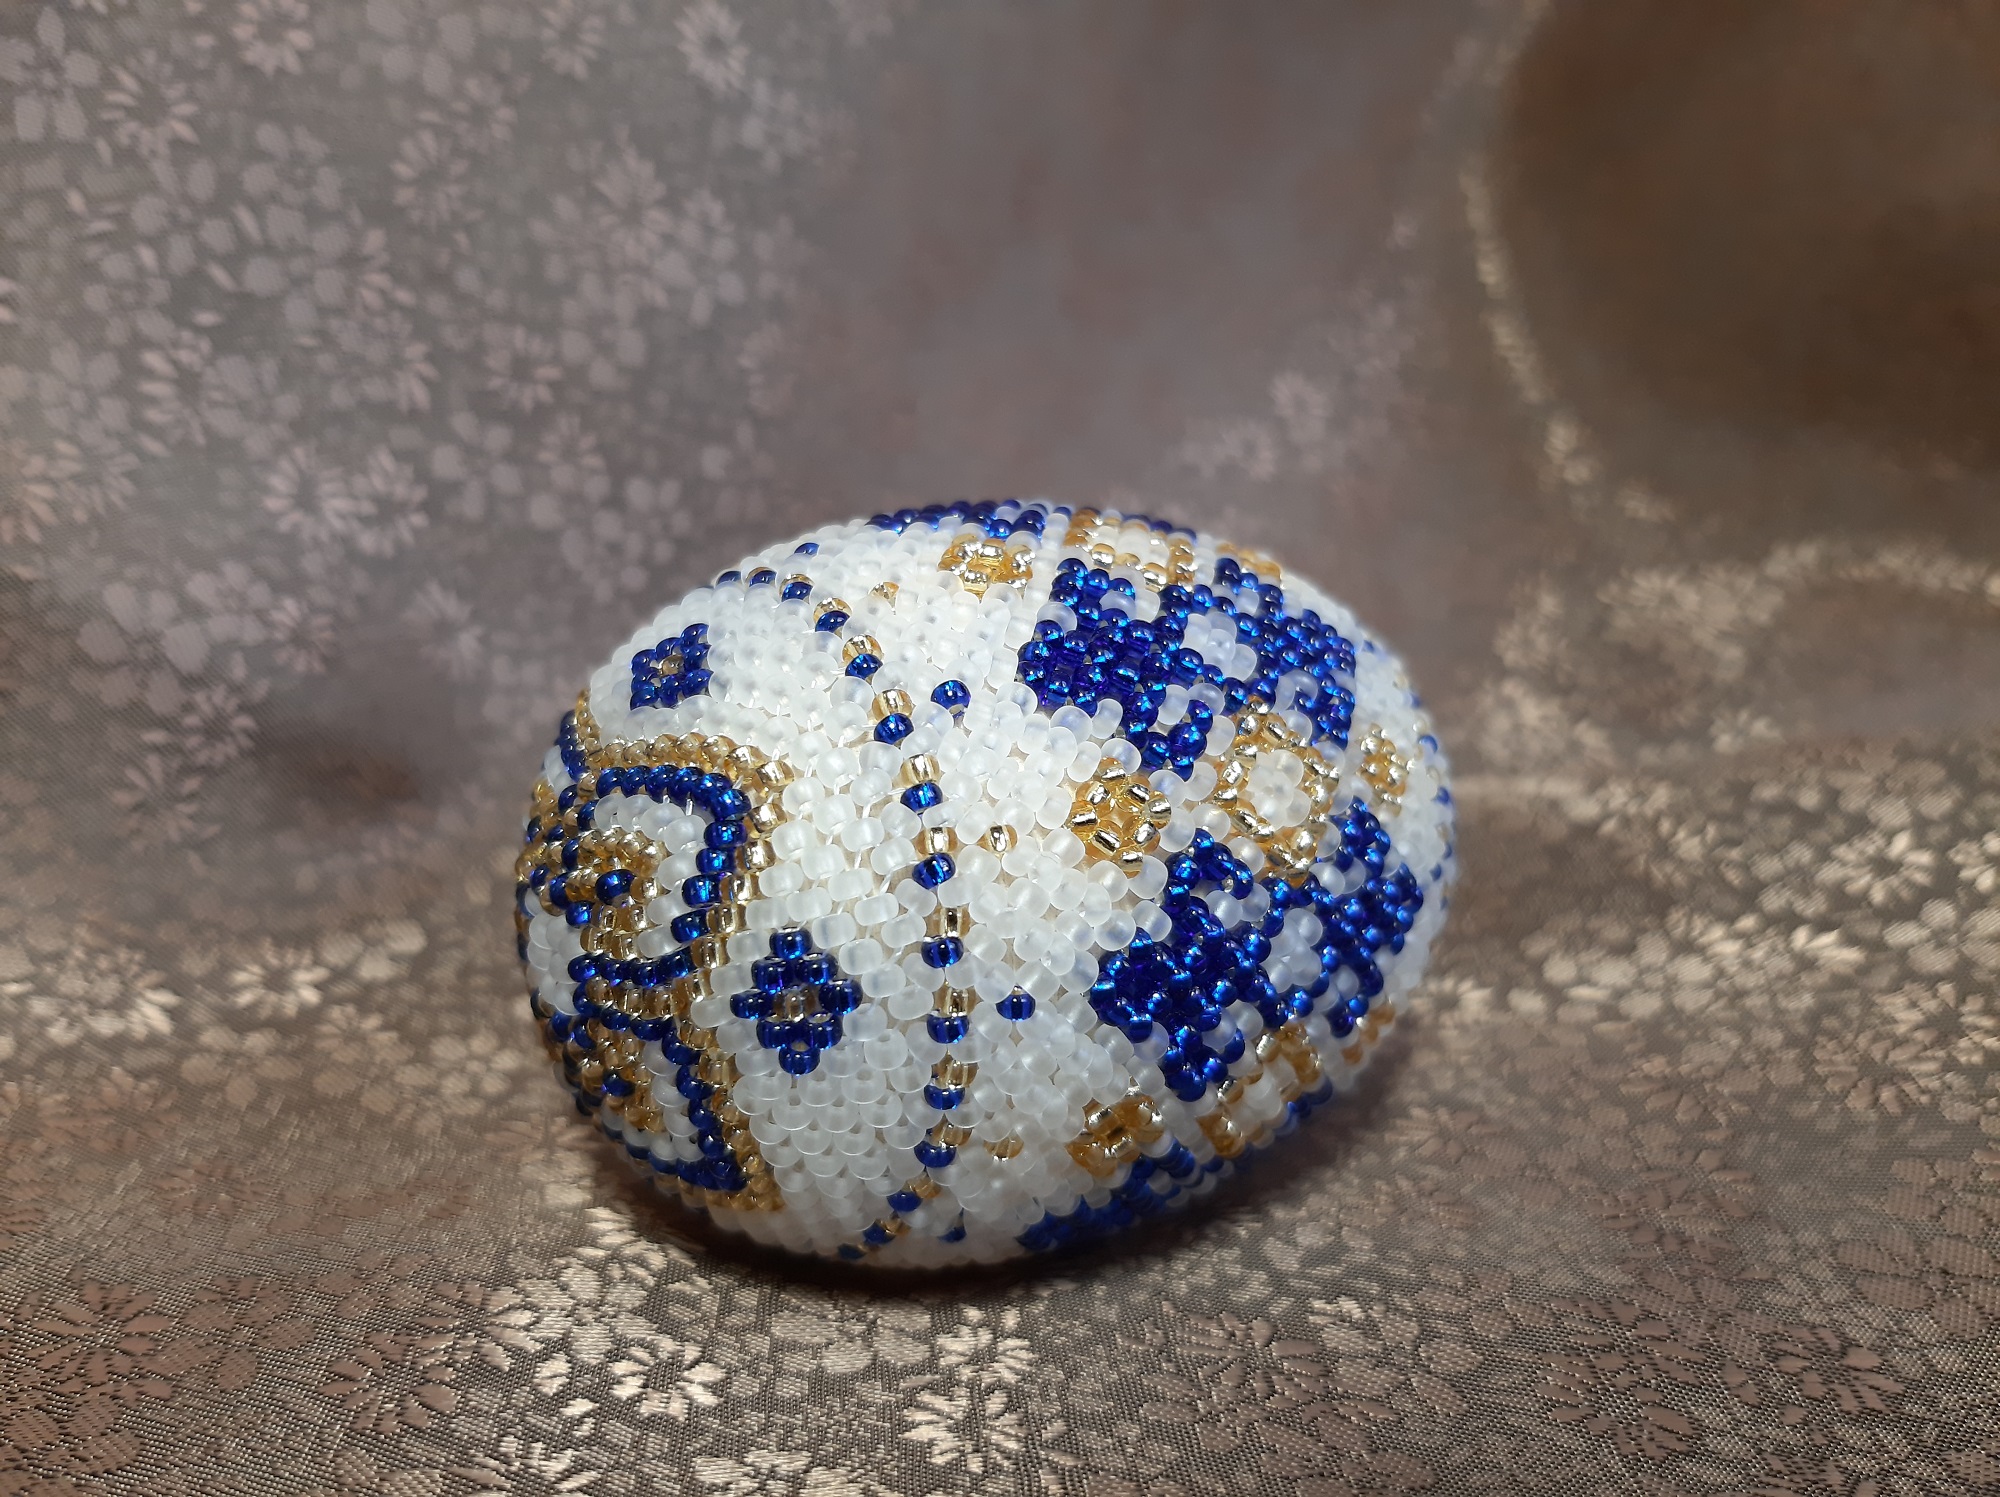 МК "Пасхальное яйцо". Плетение донышка и макушки мозаичным способом.